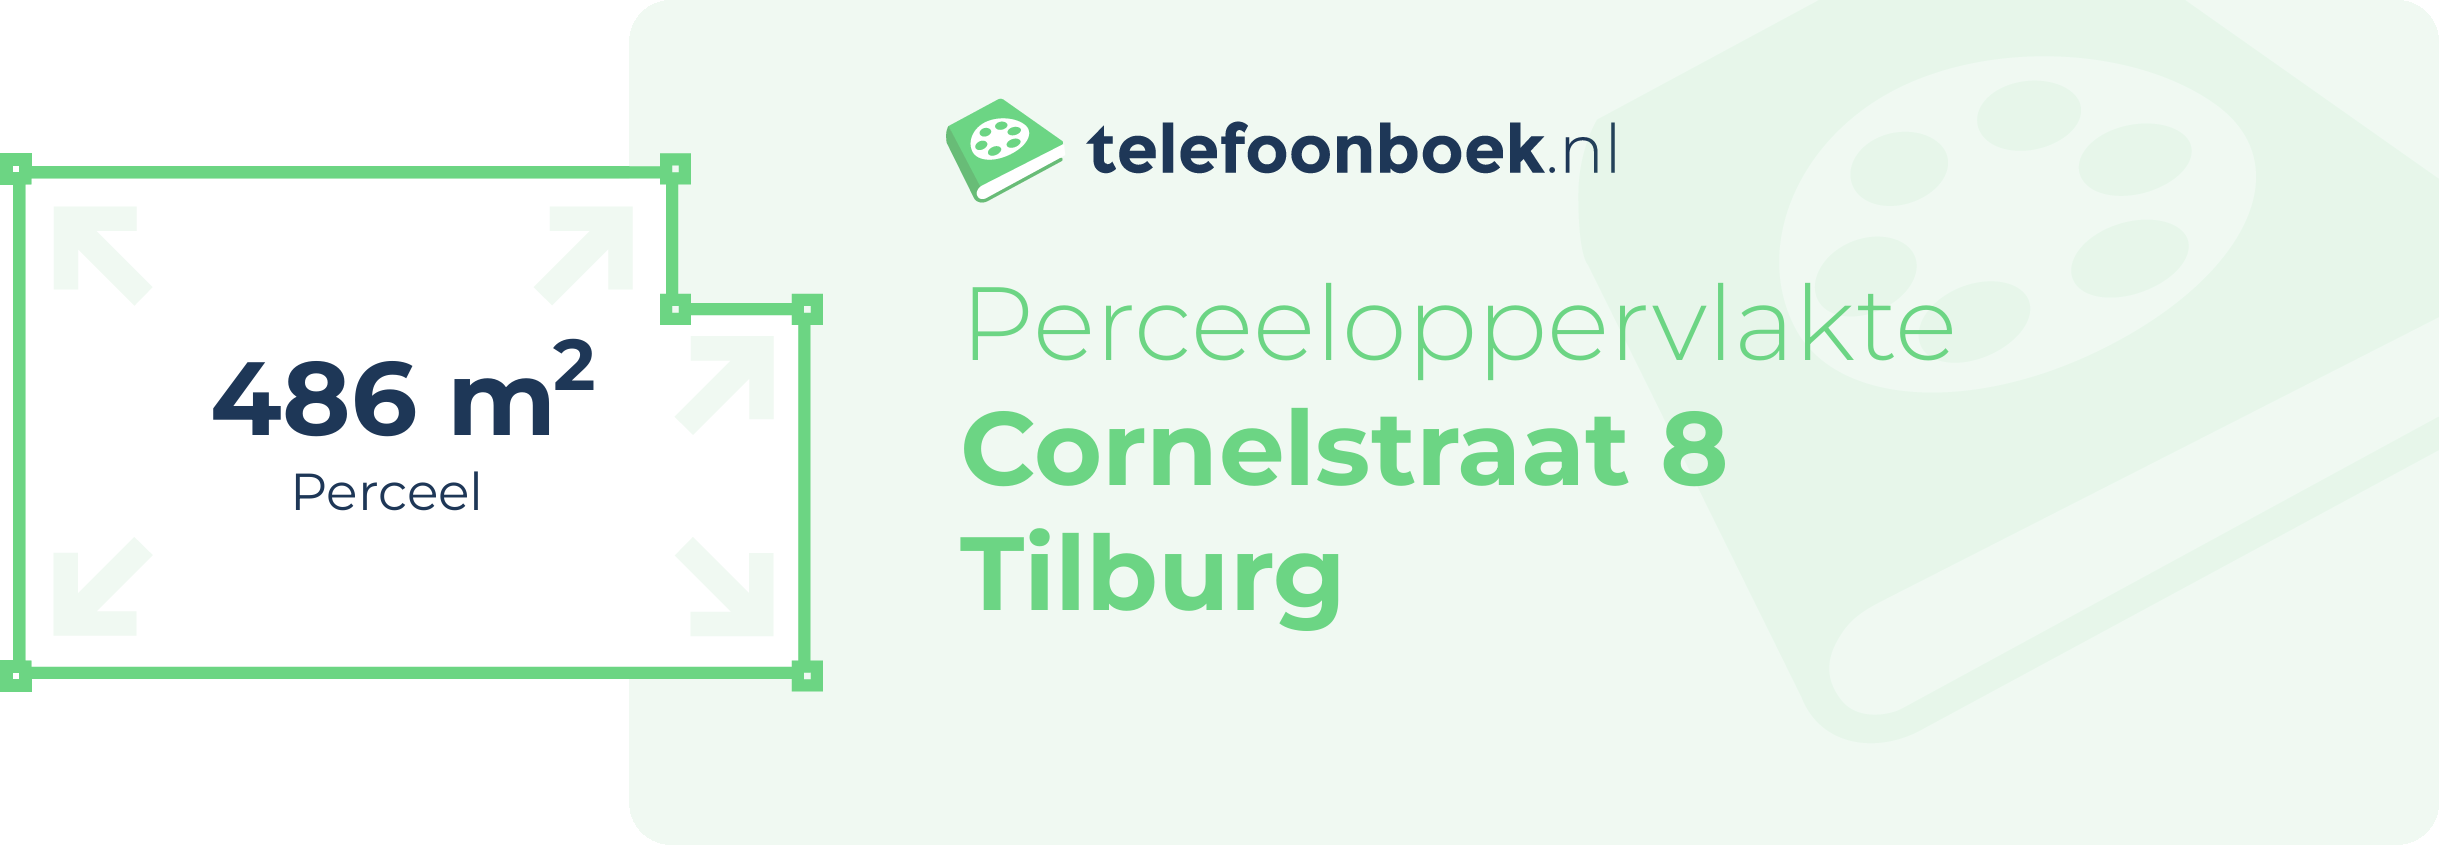 Perceeloppervlakte Cornelstraat 8 Tilburg